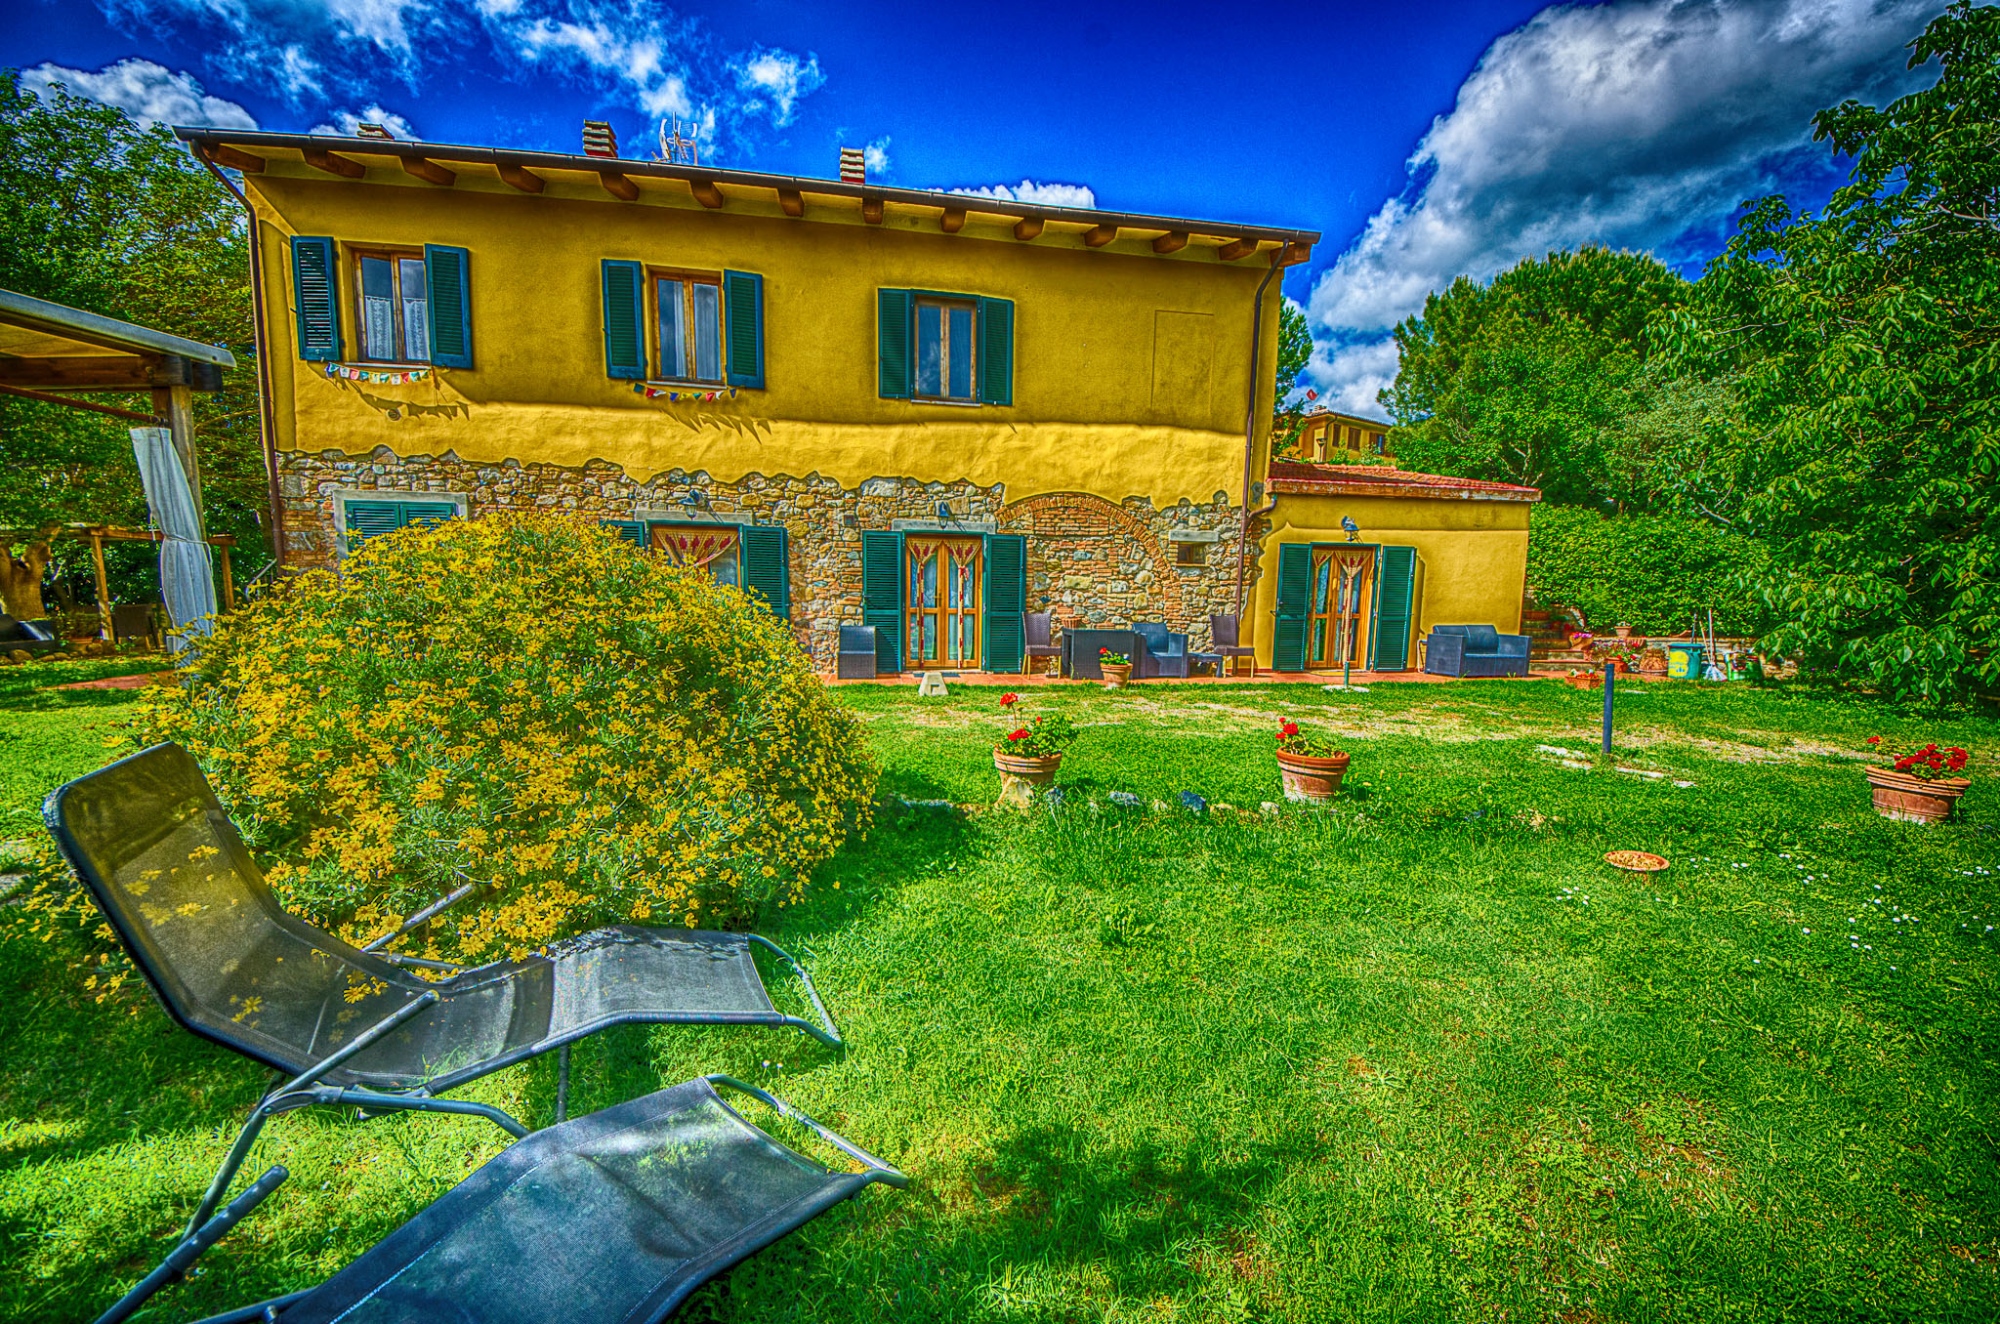 Agriturismo Il Gelso vi aspetta per ospitarvi nei suoi appartamenti in stile rustico toscano sulle colline toscane di Pomaia